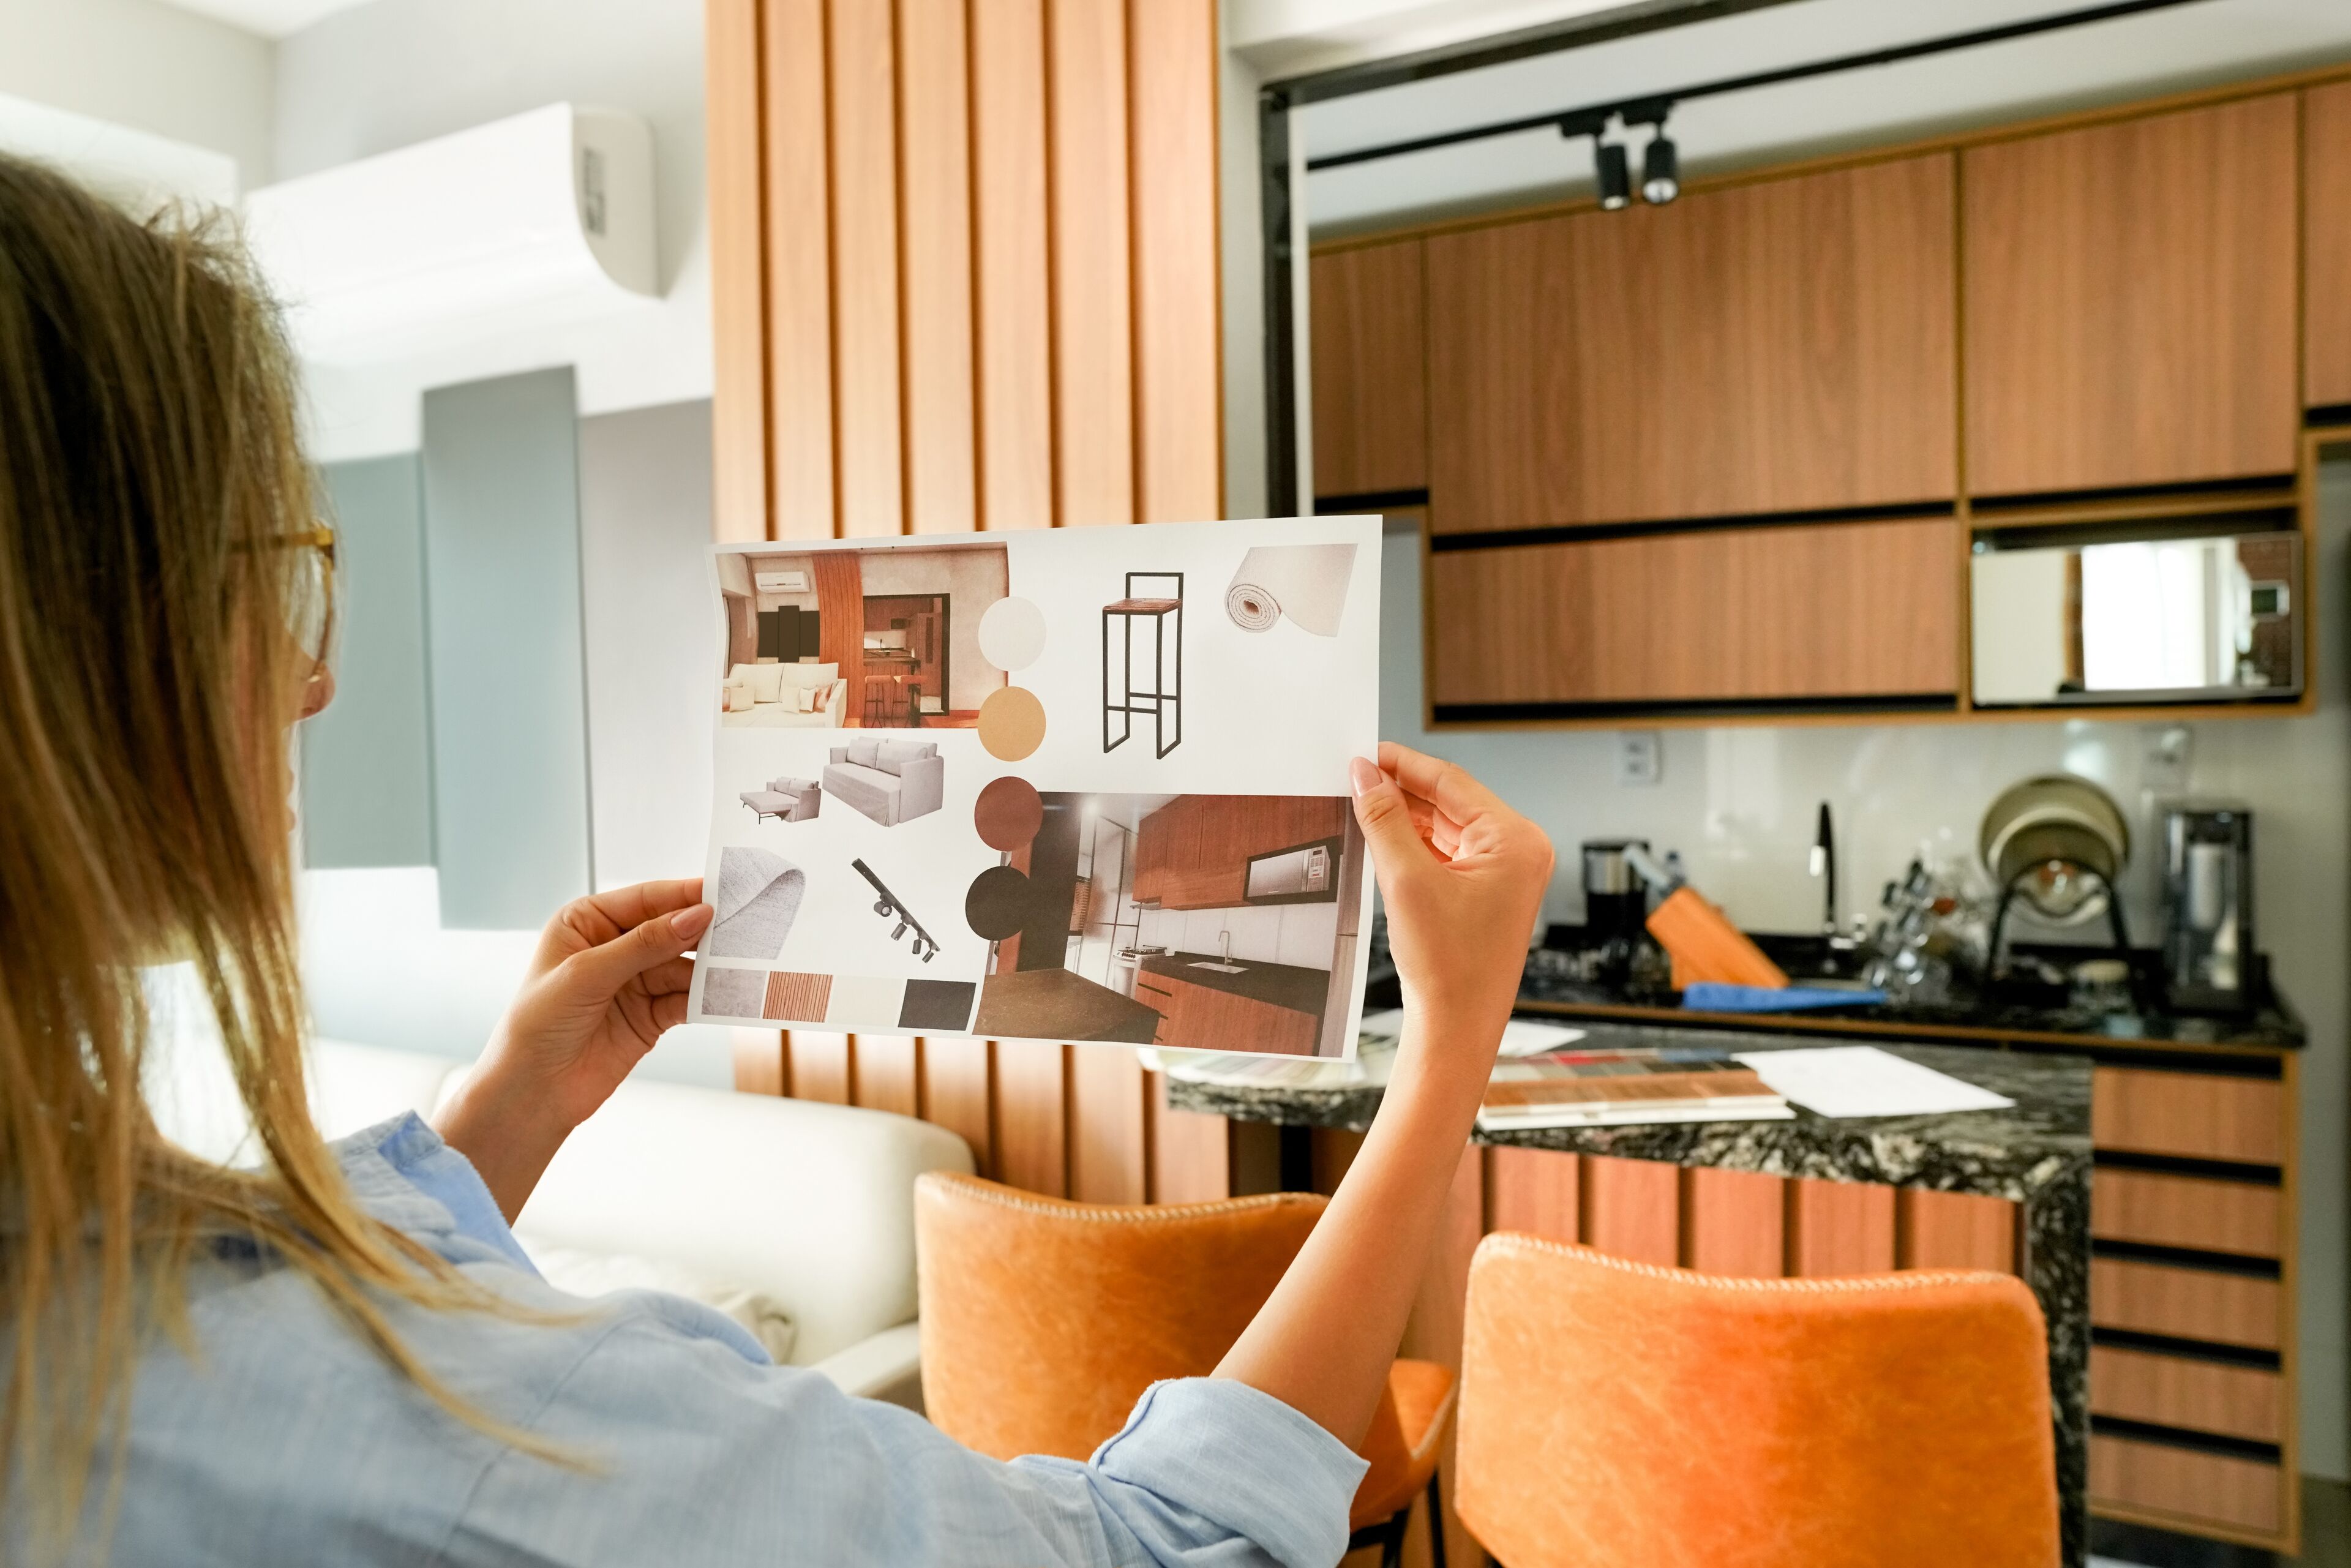 Une personne examine un panneau d'ambiance comprenant divers éléments de design intérieur pour un projet de rénovation domiciliaire.